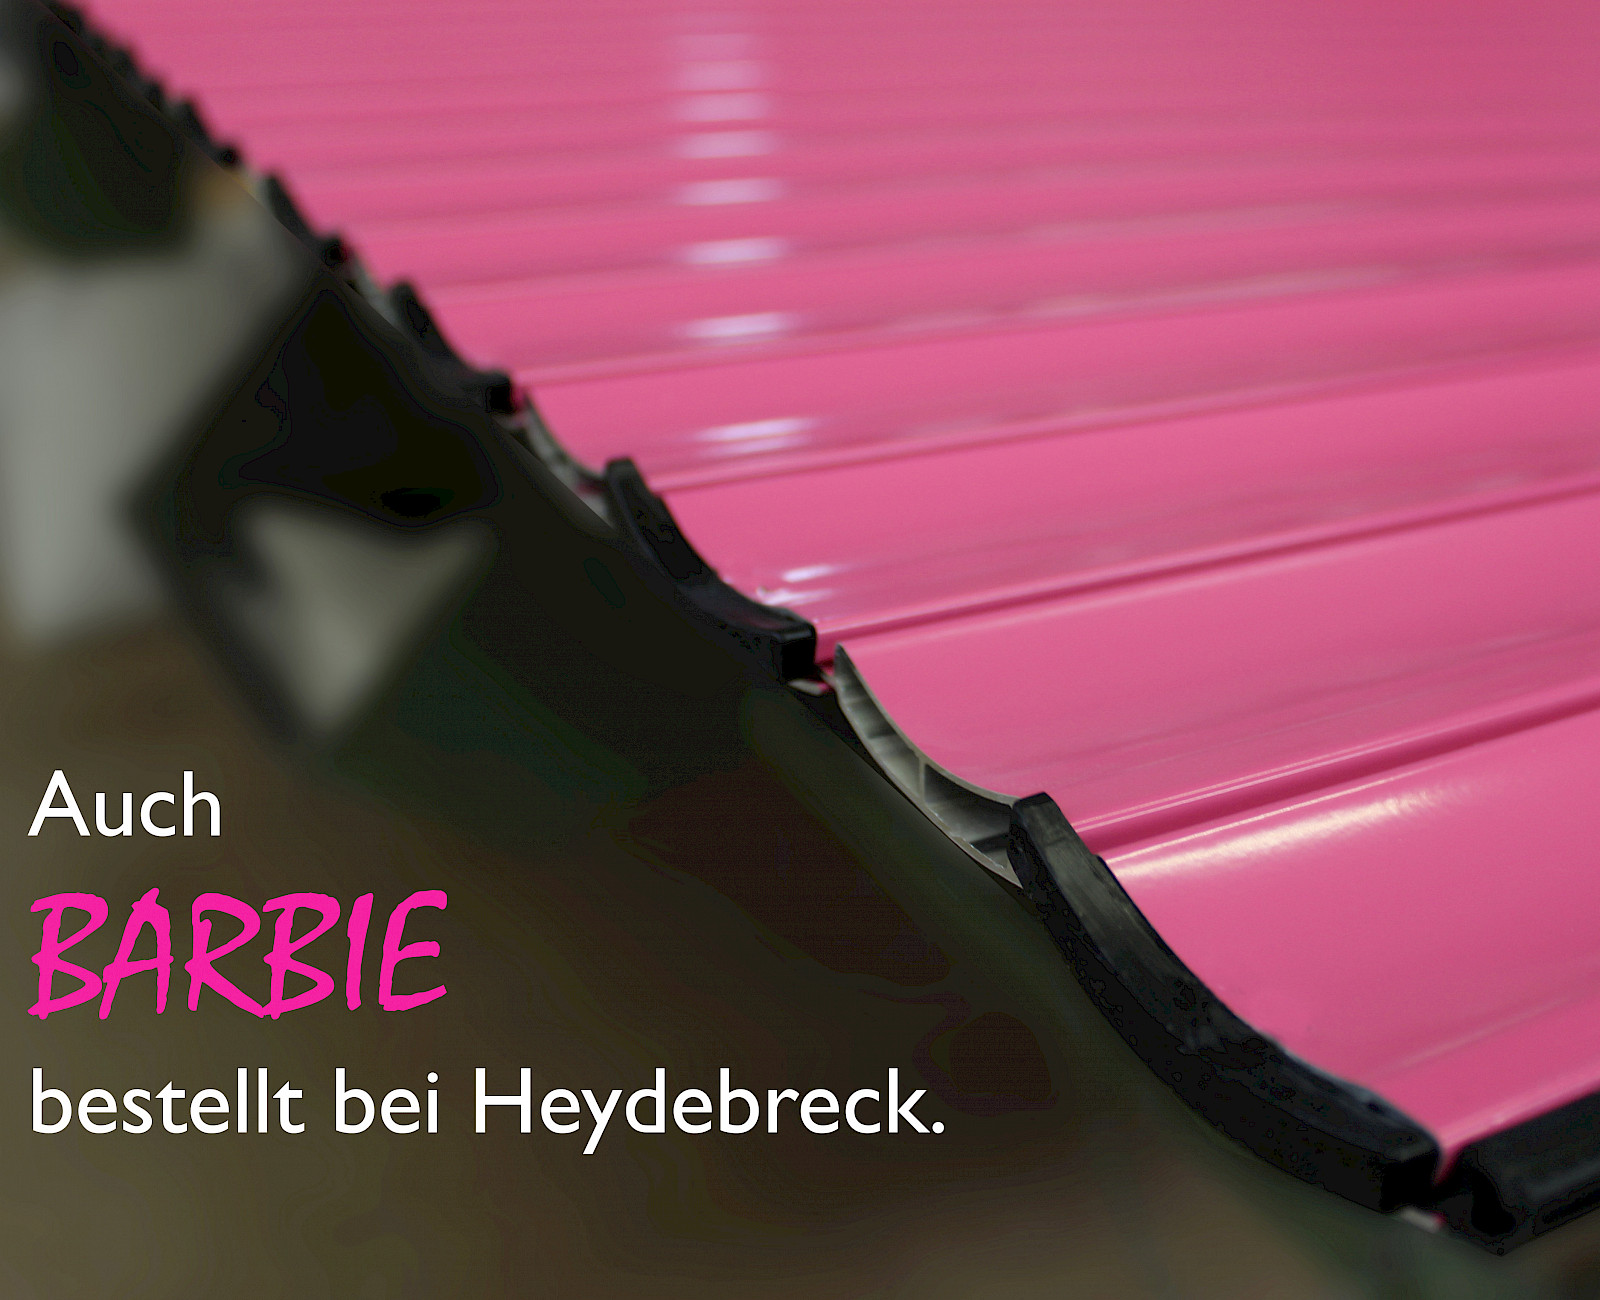 Barbie kauft pinke Heydebreck Rollläden